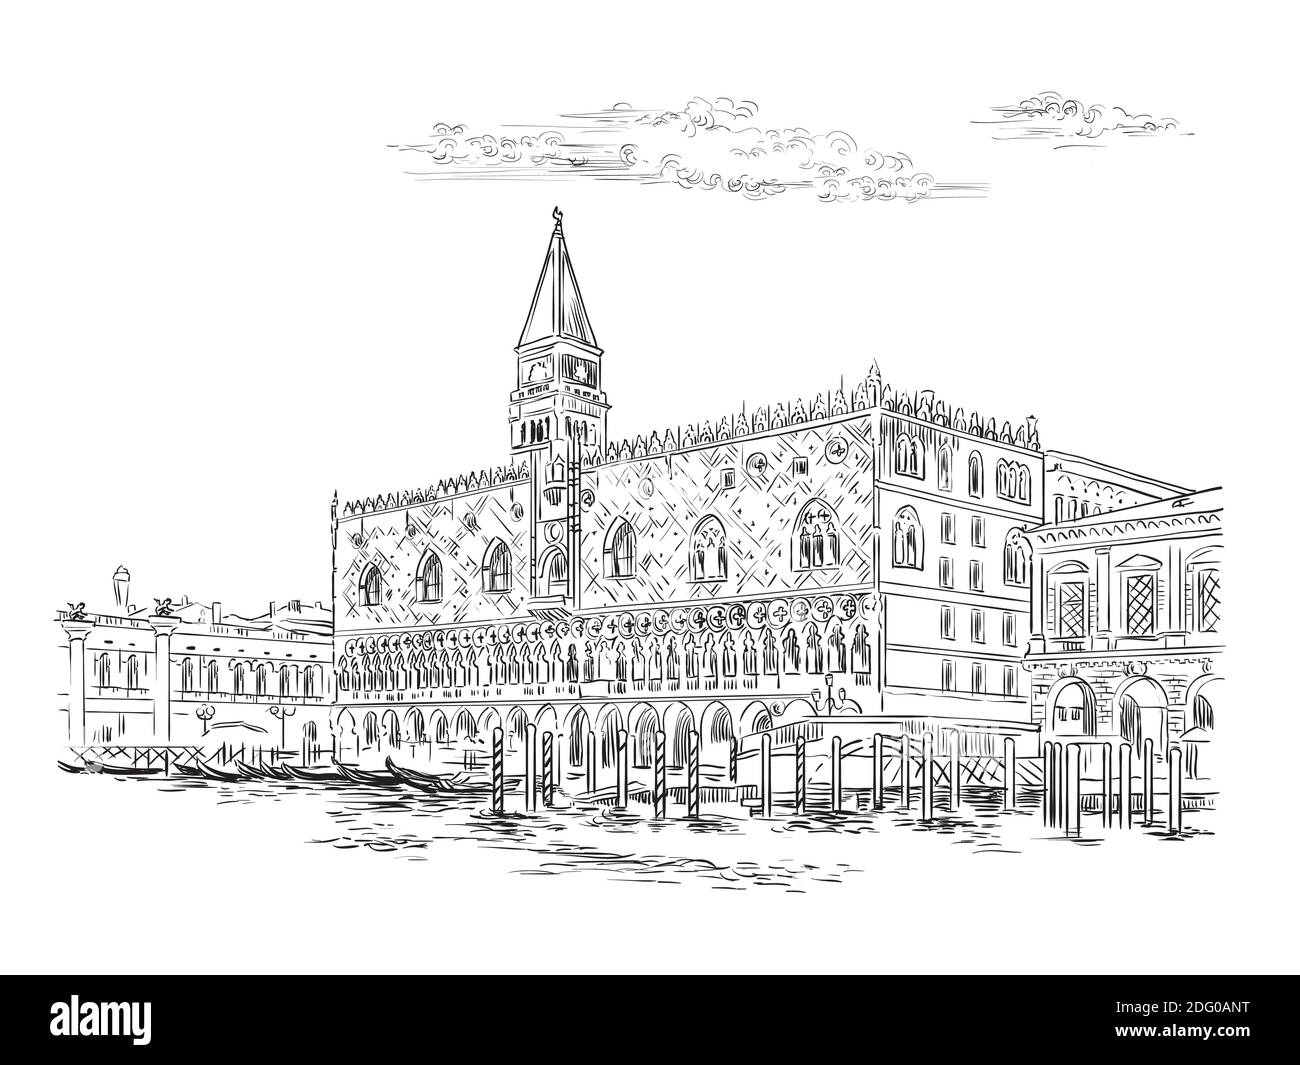 Dibujo vectorial a mano ilustración del Palacio de los Doges en Venecia. Horizonte de Venecia dibujo a mano en color negro aislado sobre fondo blanco. Trave Ilustración del Vector